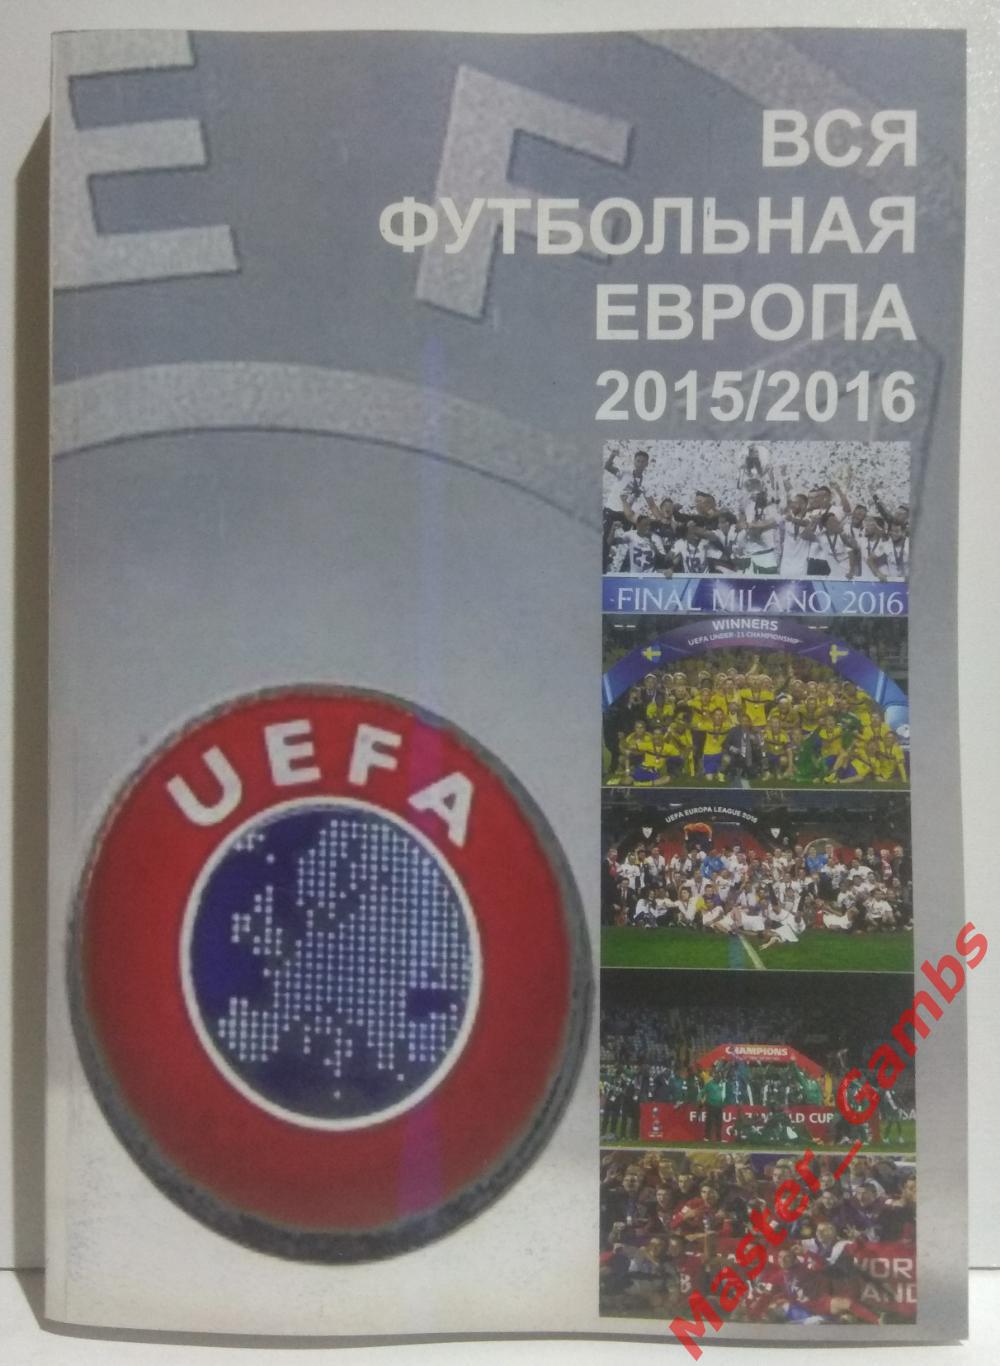 Ландер - Футбол в Украине #25 / Вся футбольная Европа #6 2015/2016* 1